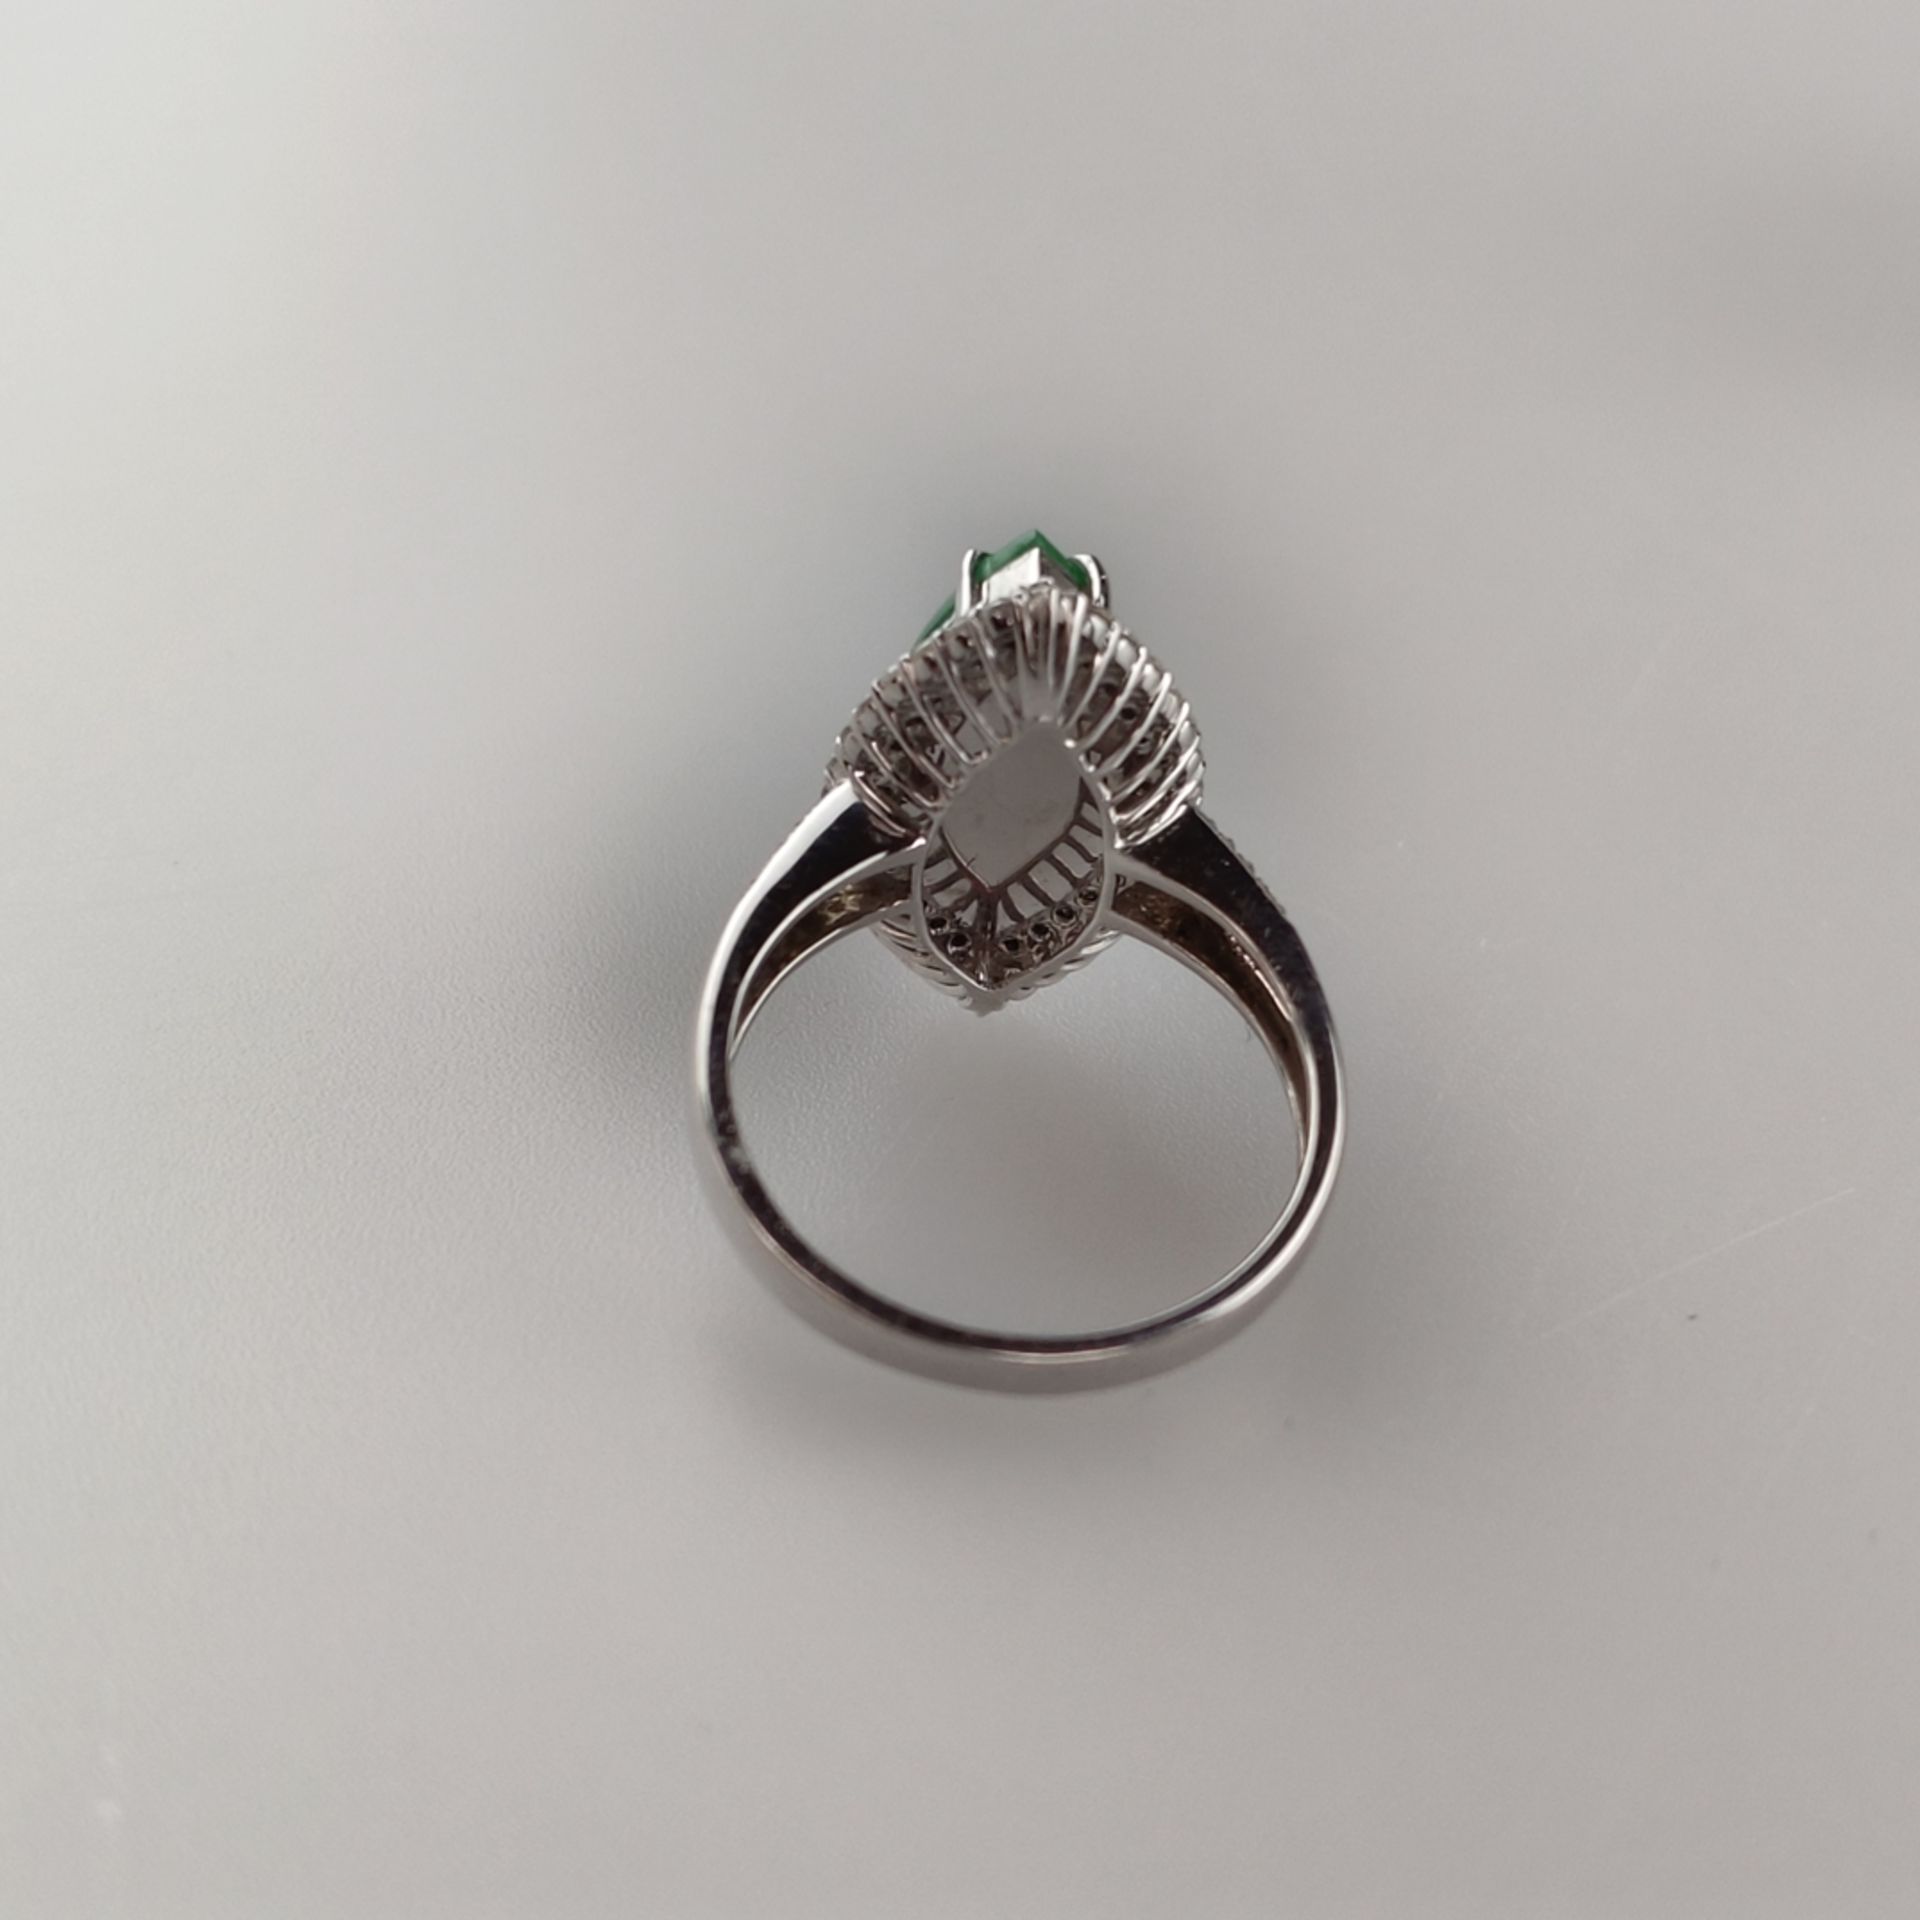 18K-Jadering mit Diamanten - Weißgold 750/000 (18K), navetteförmiger Ringkopf mit grüner Jade von c - Bild 4 aus 7